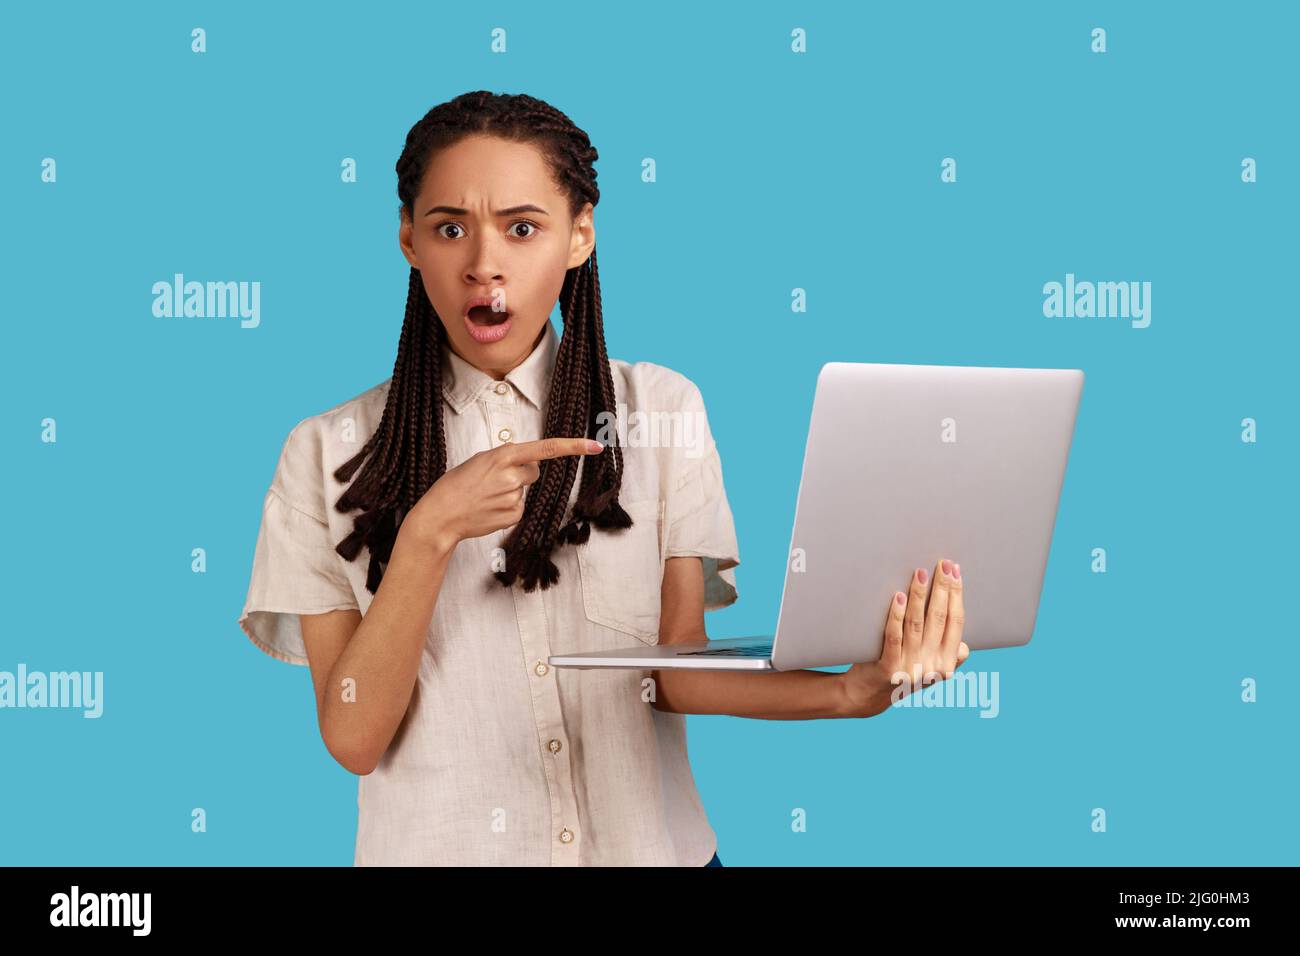 Erstaunt Frau schockiert operativen Software-Probleme, zeigt auf Laptop-Bildschirm, afraids des Datenverlustes, trägt weißes Hemd. Innenaufnahme des Studios isoliert auf blauem Hintergrund. Stockfoto